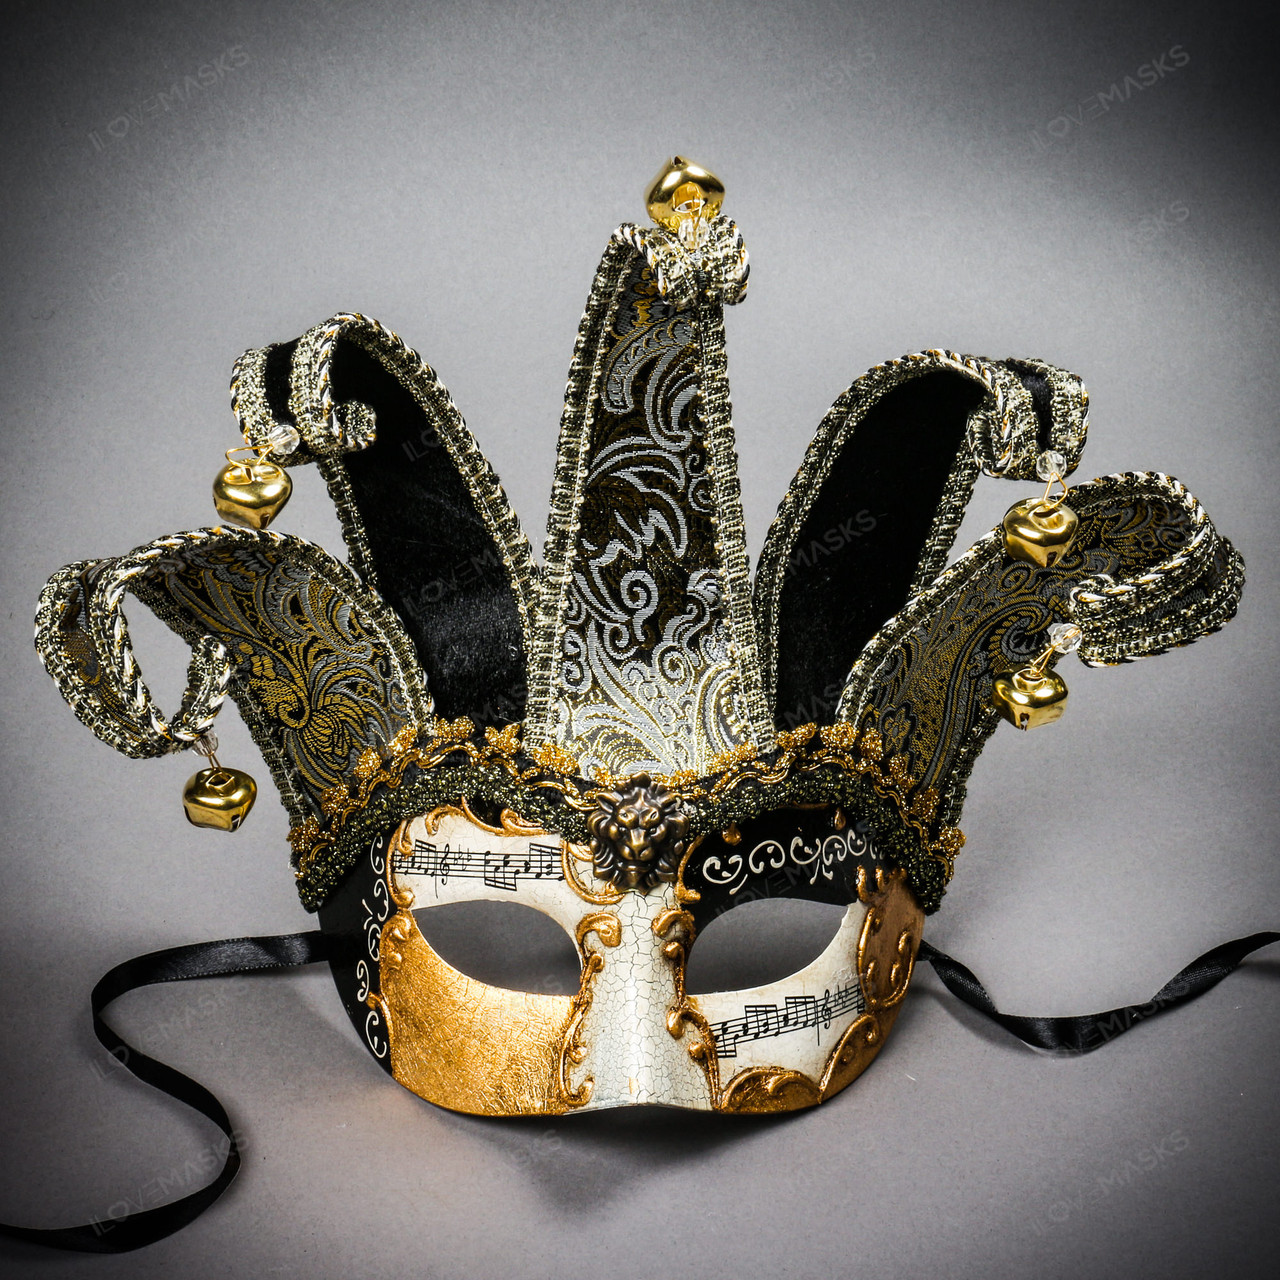 Jester Joker Venetian Masquerade Full Face Mask with Bells - Black